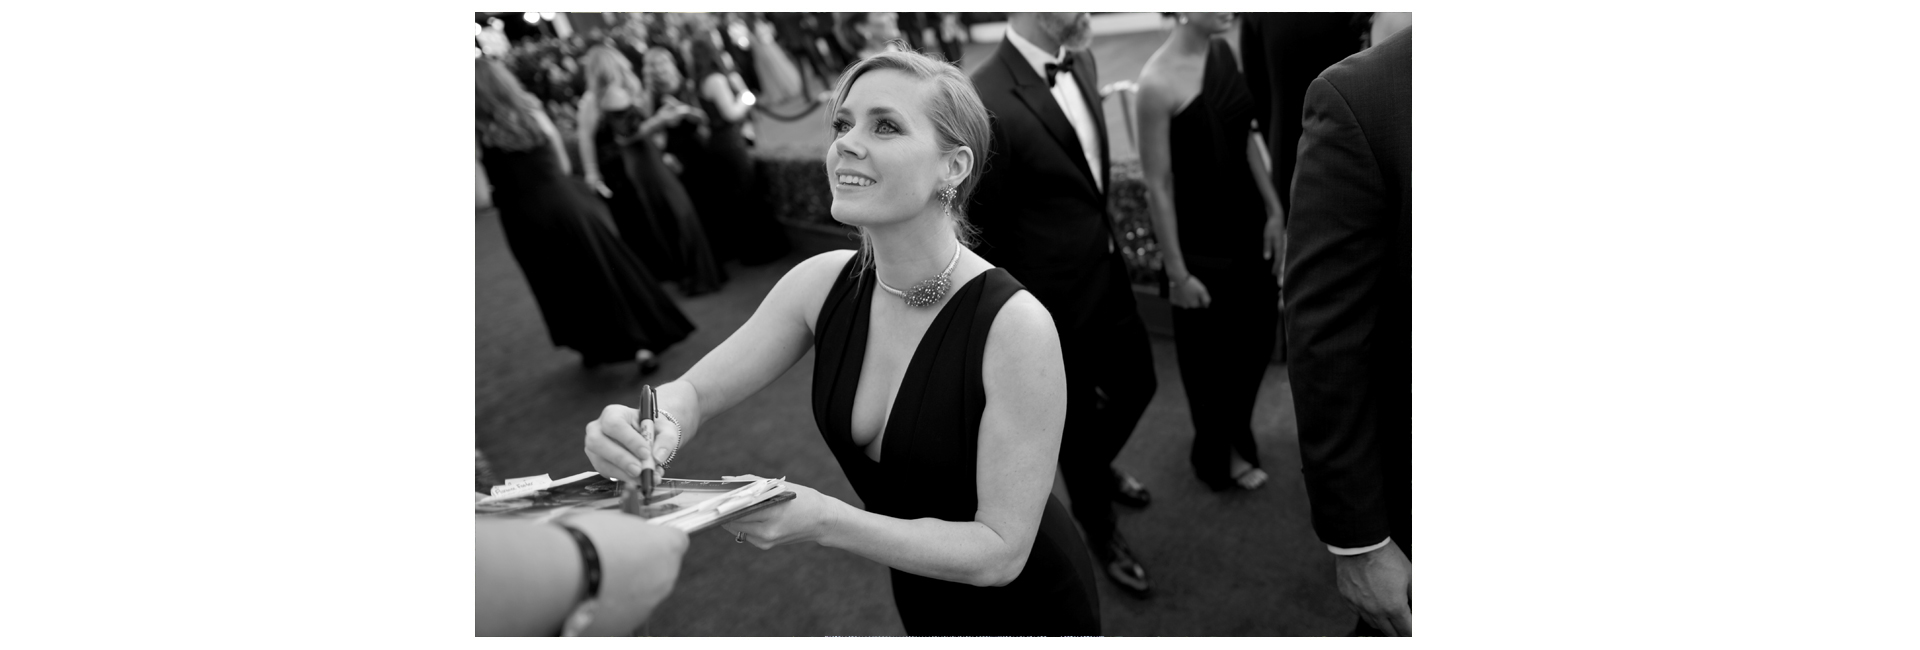 Премия Гильдии актеров 2017: гости церемонии награждения (фото 14)